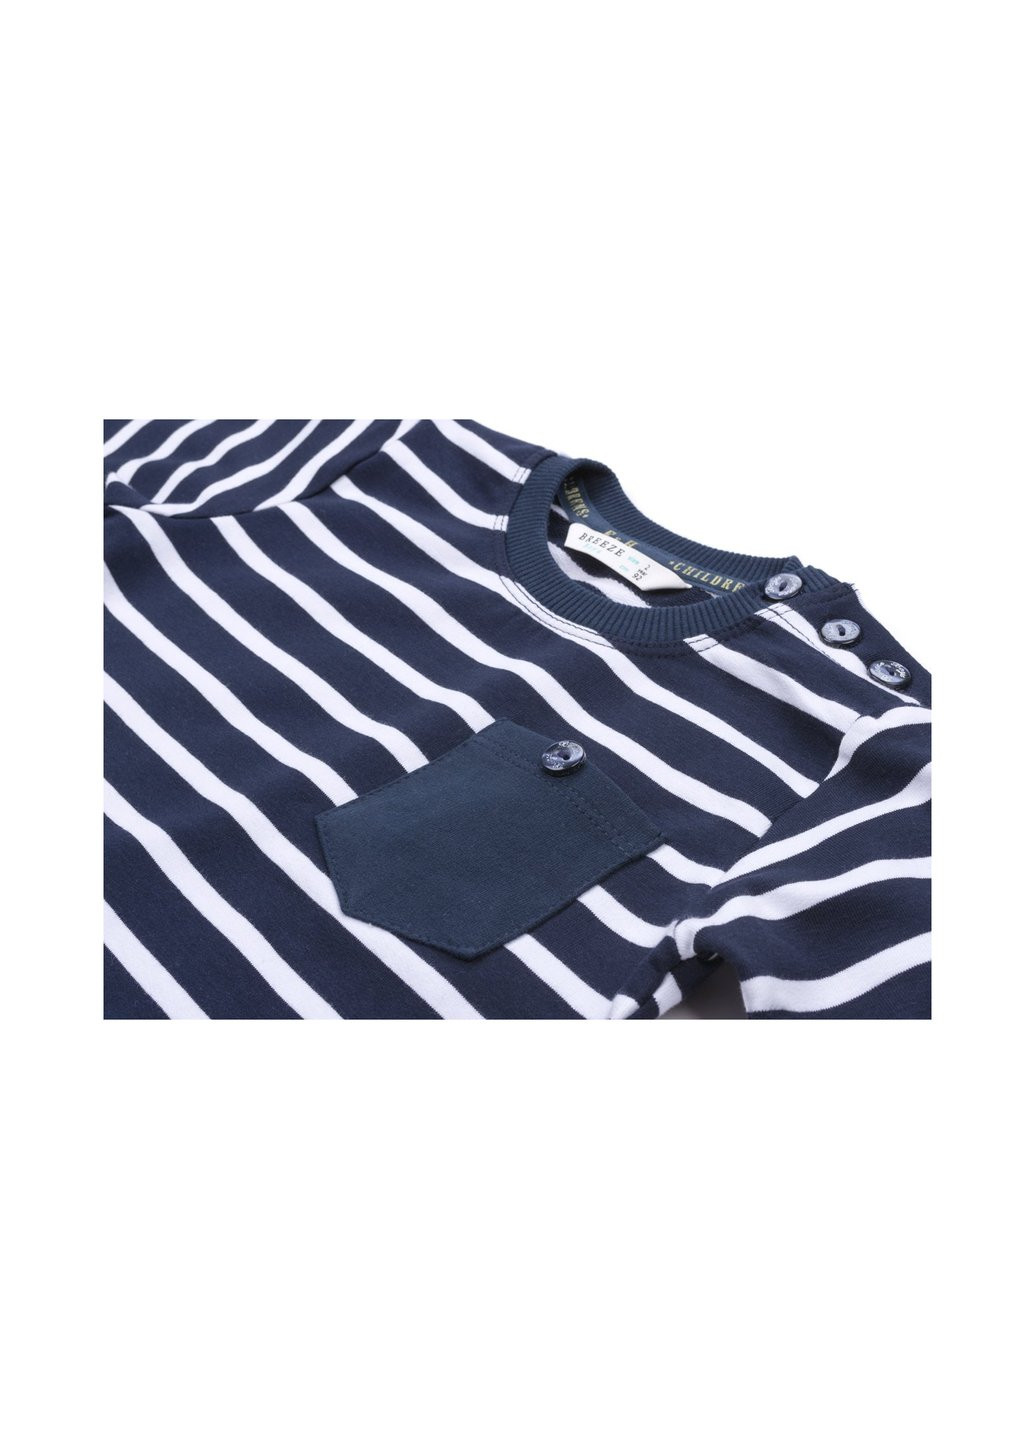 Комбинированный демисезонный набор детской одежды в полосочку и с карманчиком (8999-74b-darkblue) Breeze